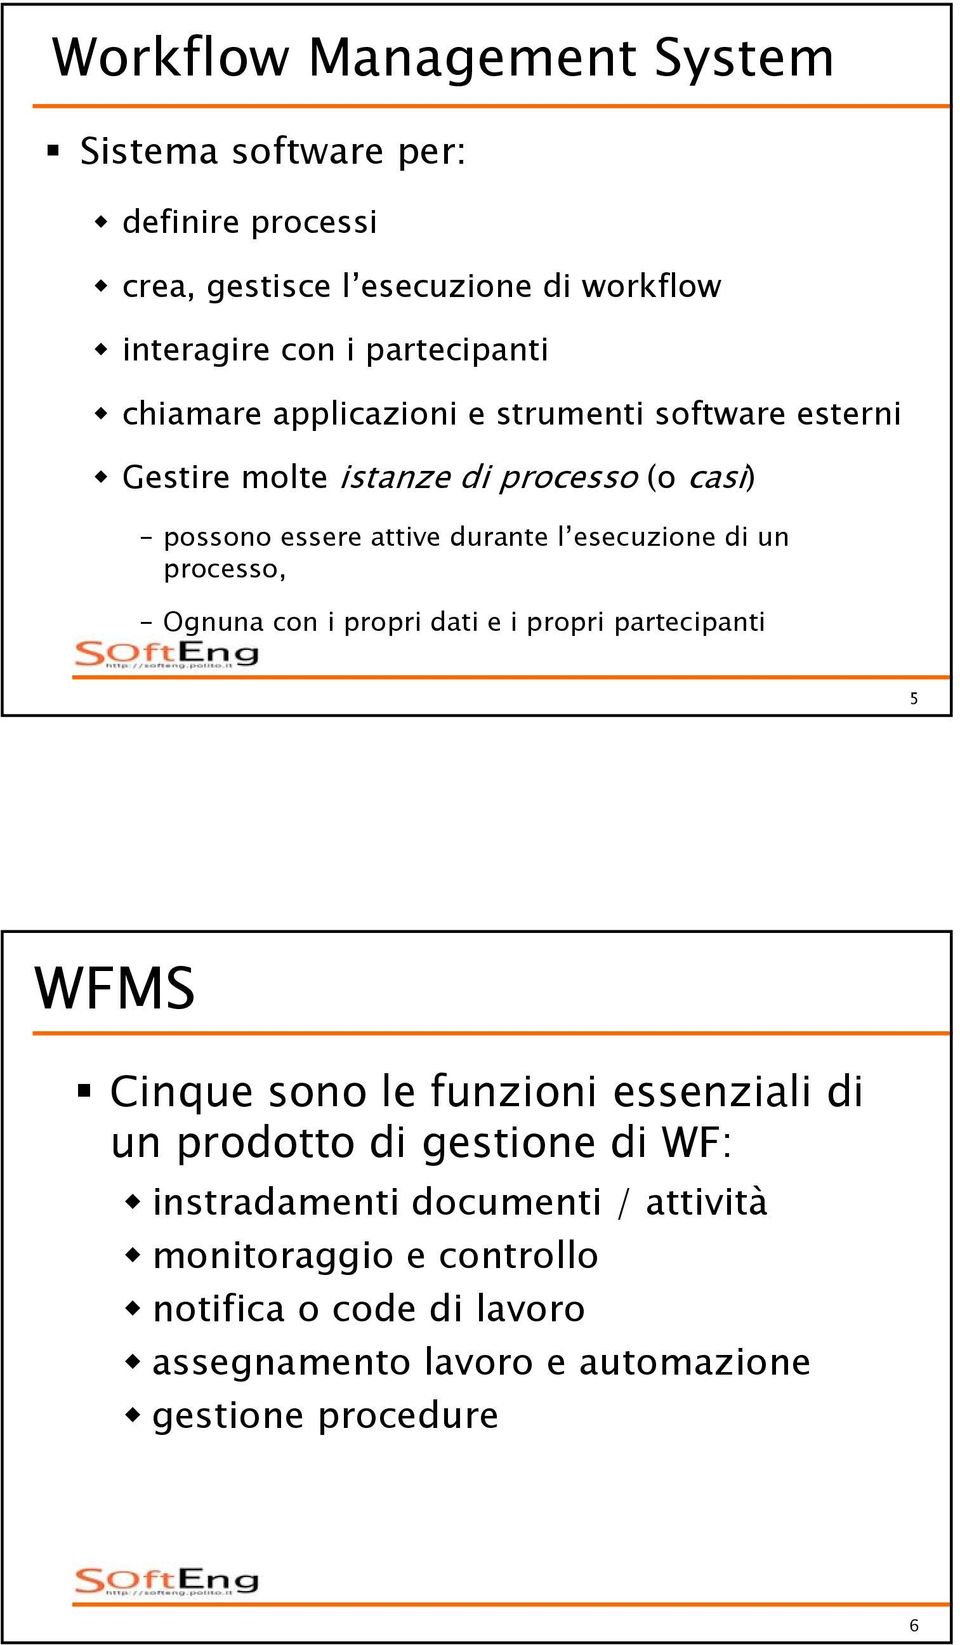 processo, Ognuna con i propri dati e i propri partecipanti 5 WFMS Cinque sono le funzioni essenziali di un prodotto di gestione di WF: